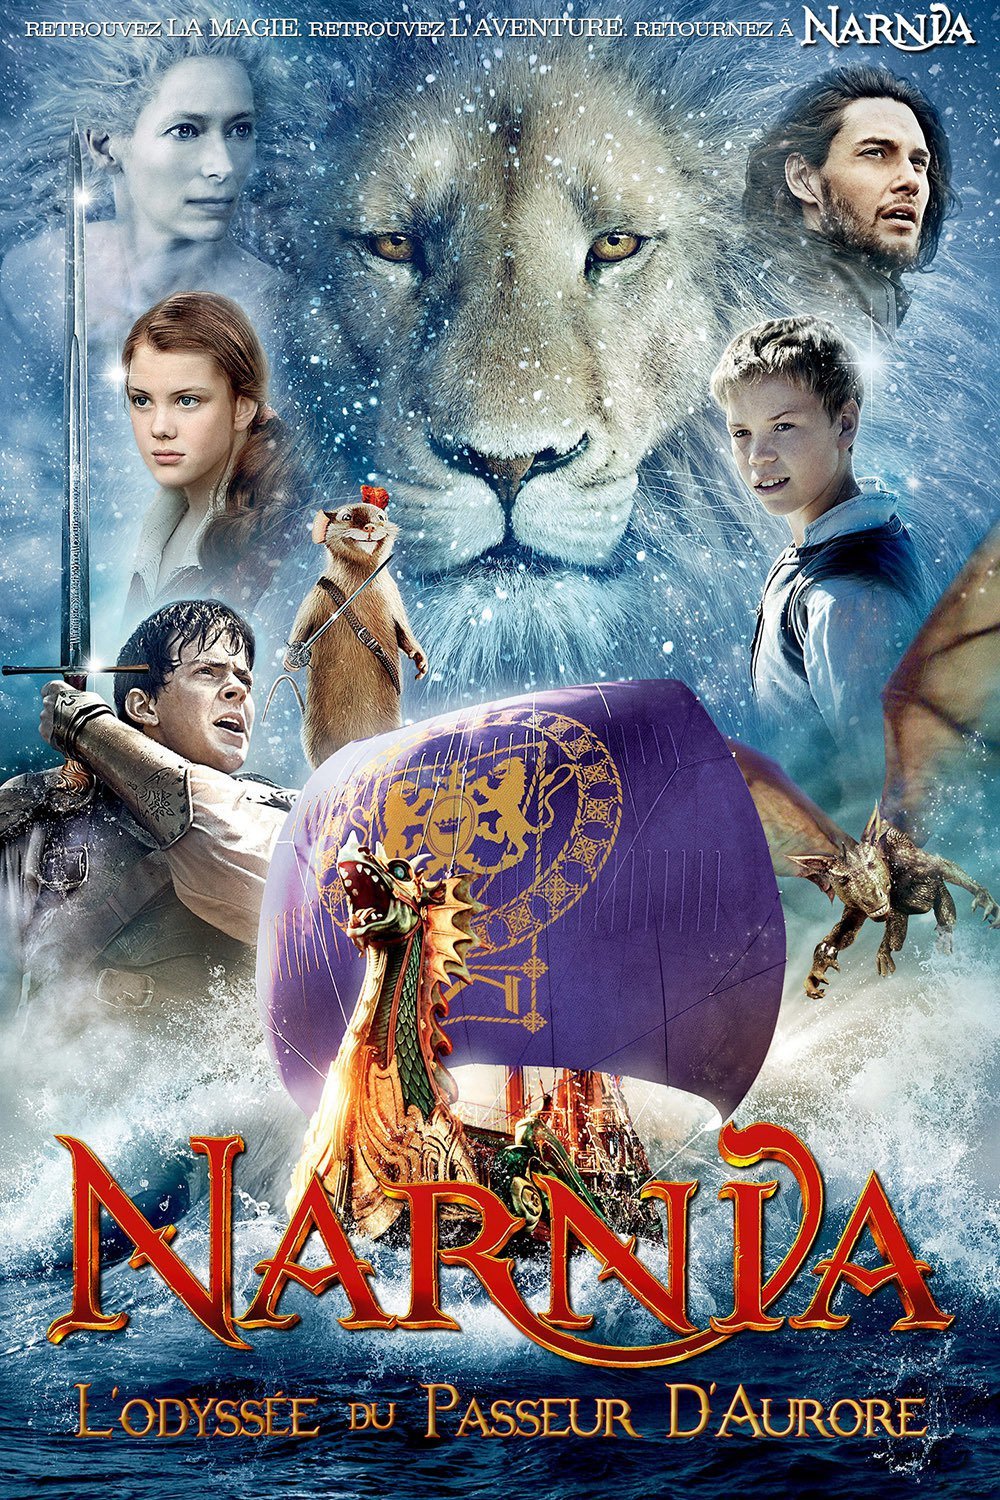 Le Monde de Narnia, chapitre 3 - L'Odyssée du passeur d'aurore